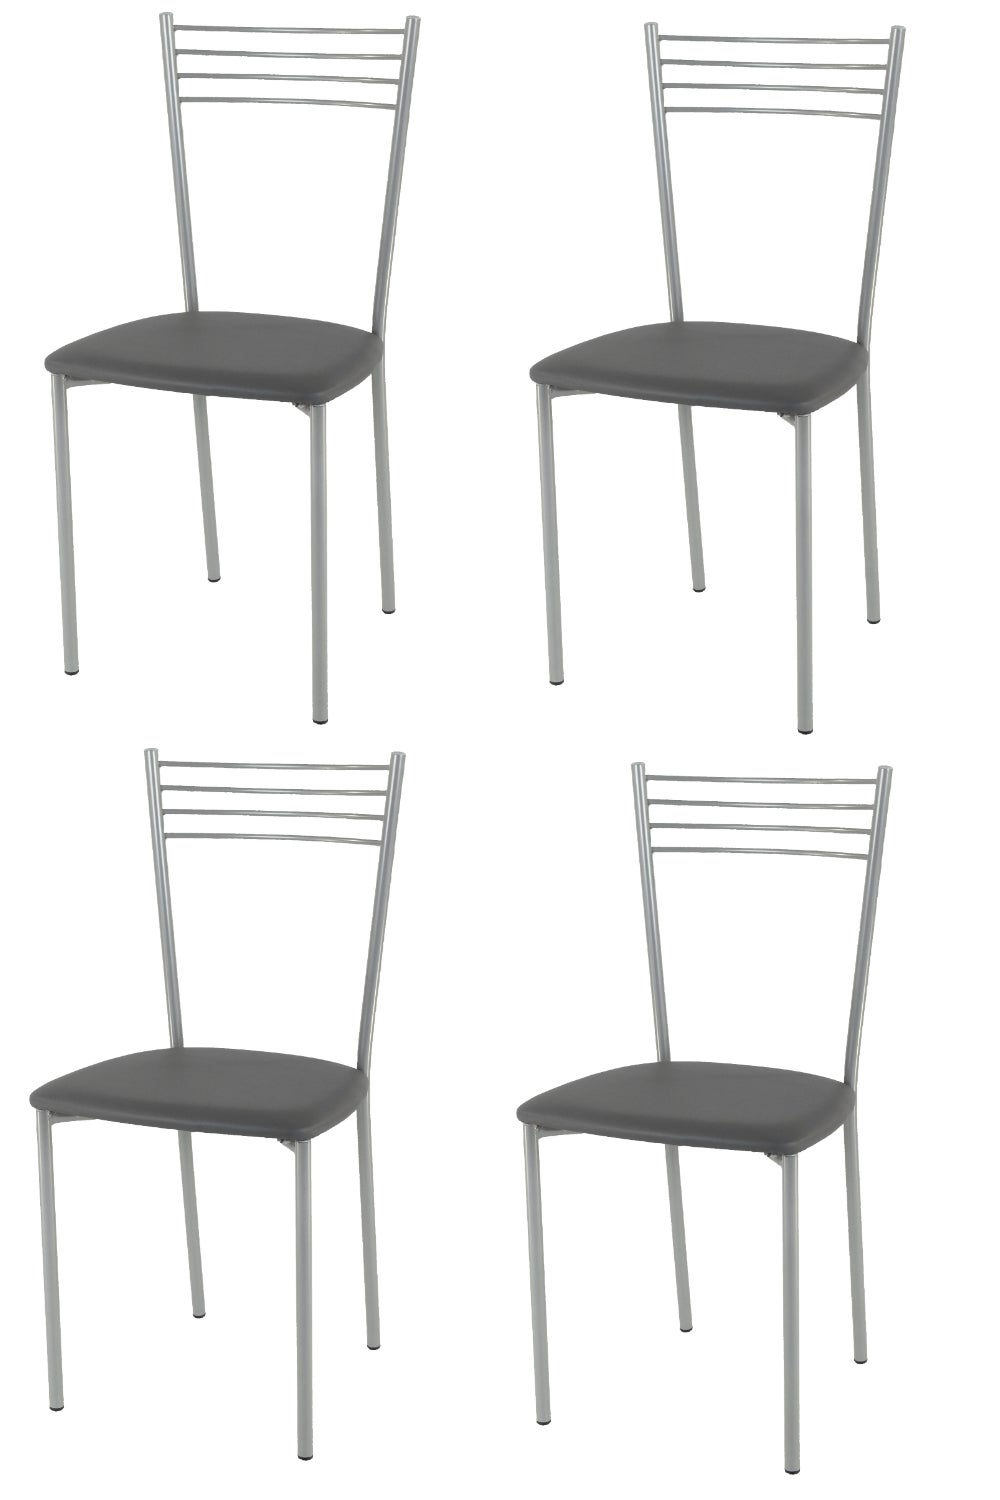 Tommychairs - Set 4 sedie Elena per cucina, struttura in acciaio verniciato  alluminio, seduta imbottita e rivestita in pelle artificiale grigio scuro